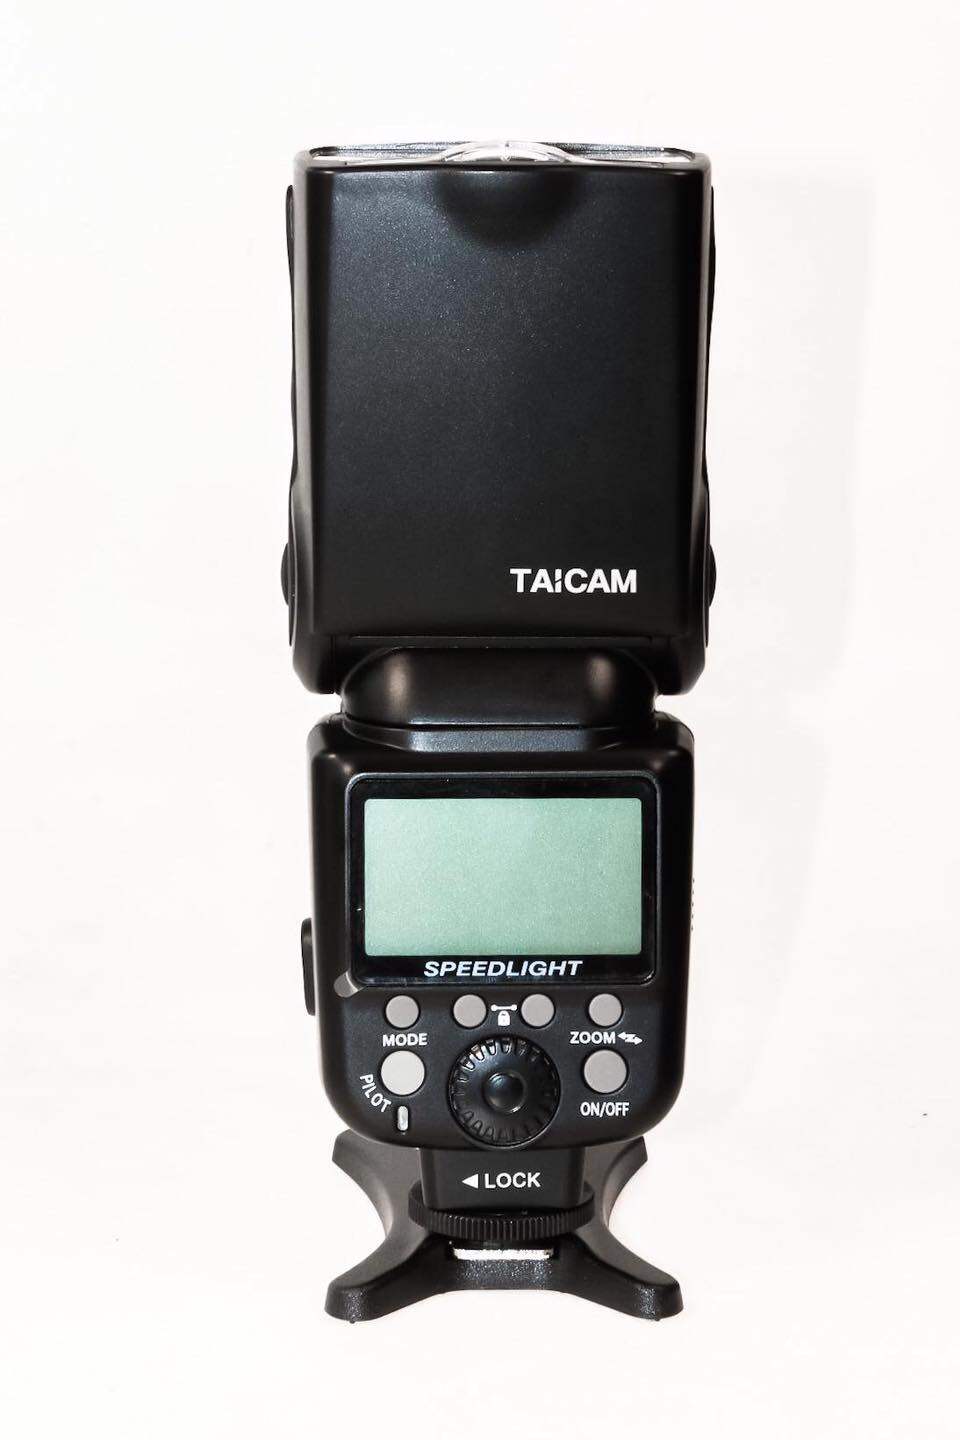 แฟลช TAICAM AS-960II